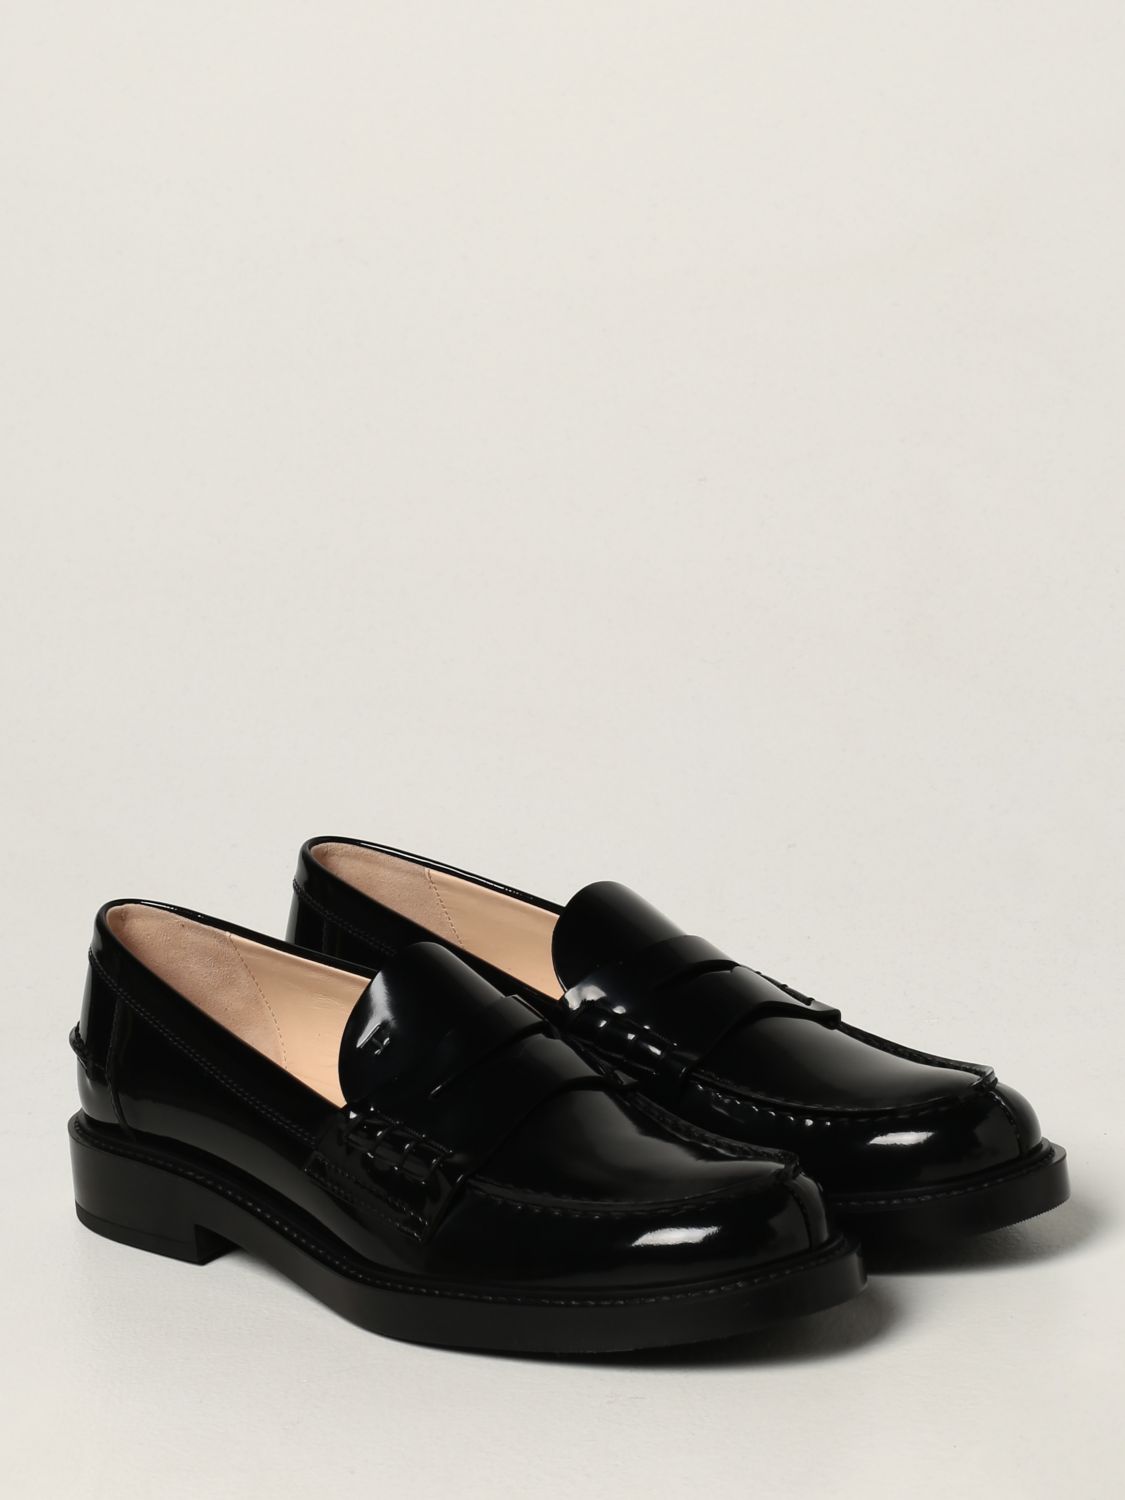 Mocassins Tod's: Chaussures femme Tod's noir 2